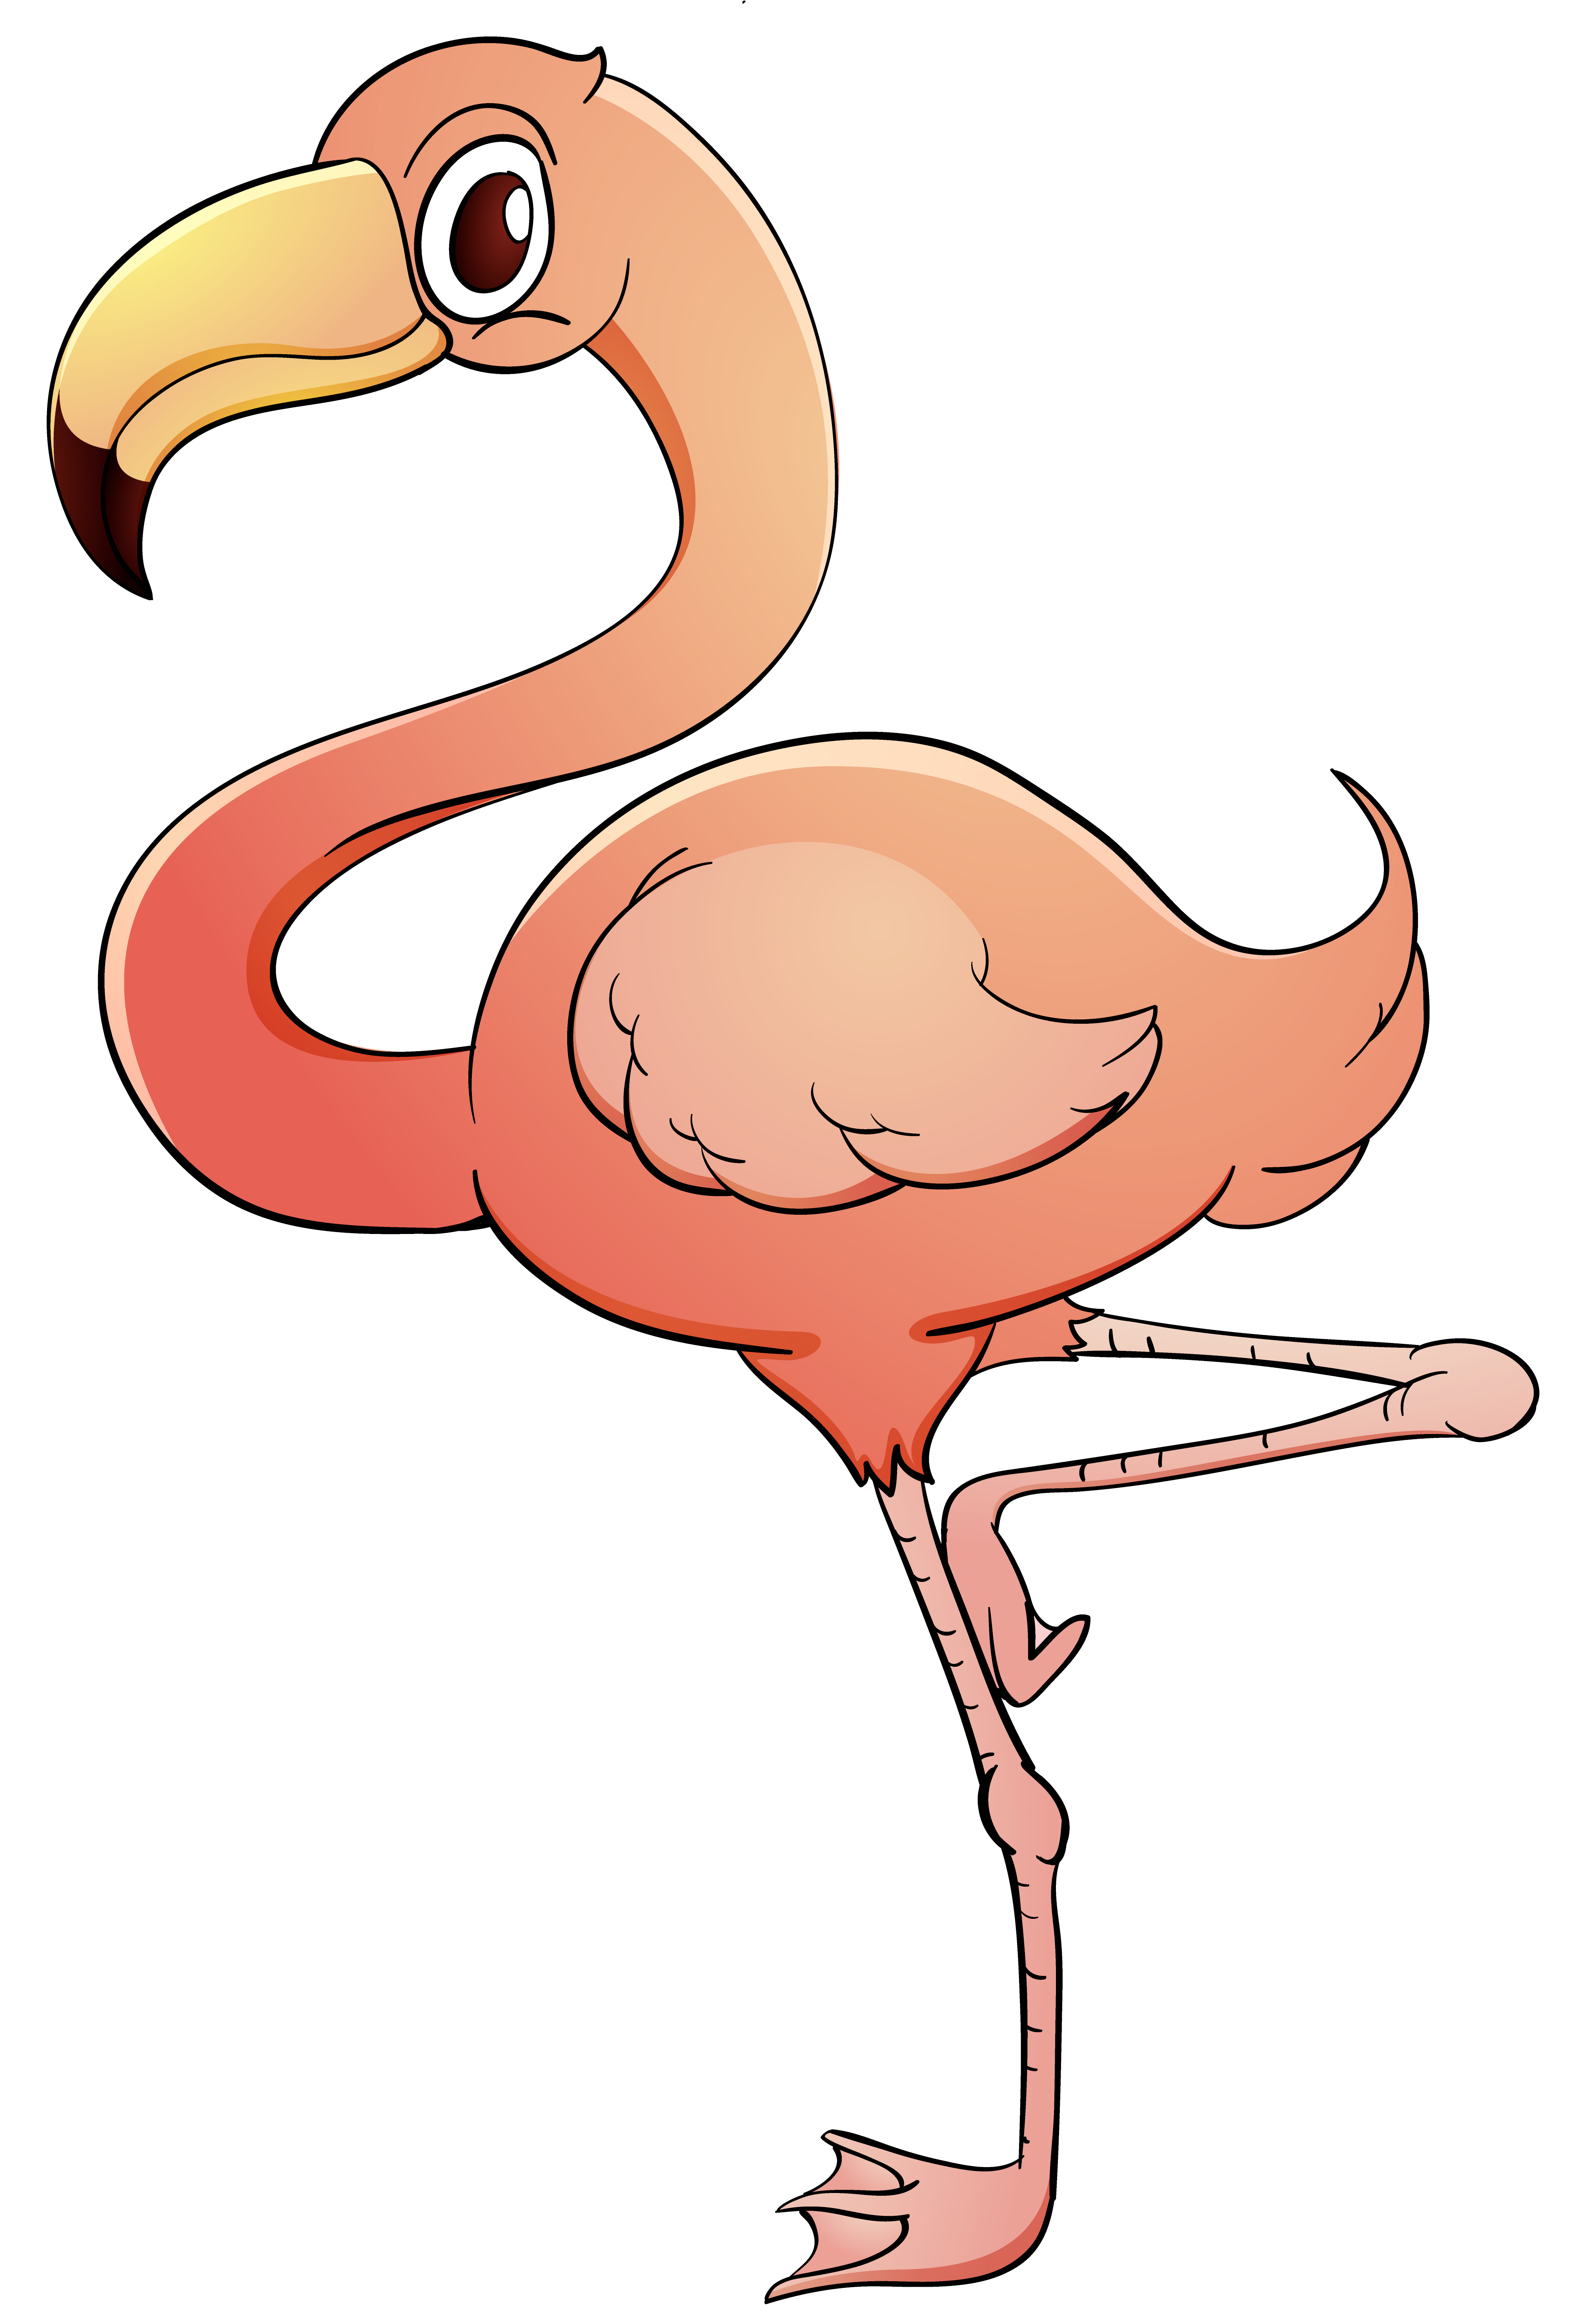 vector flamingo svg